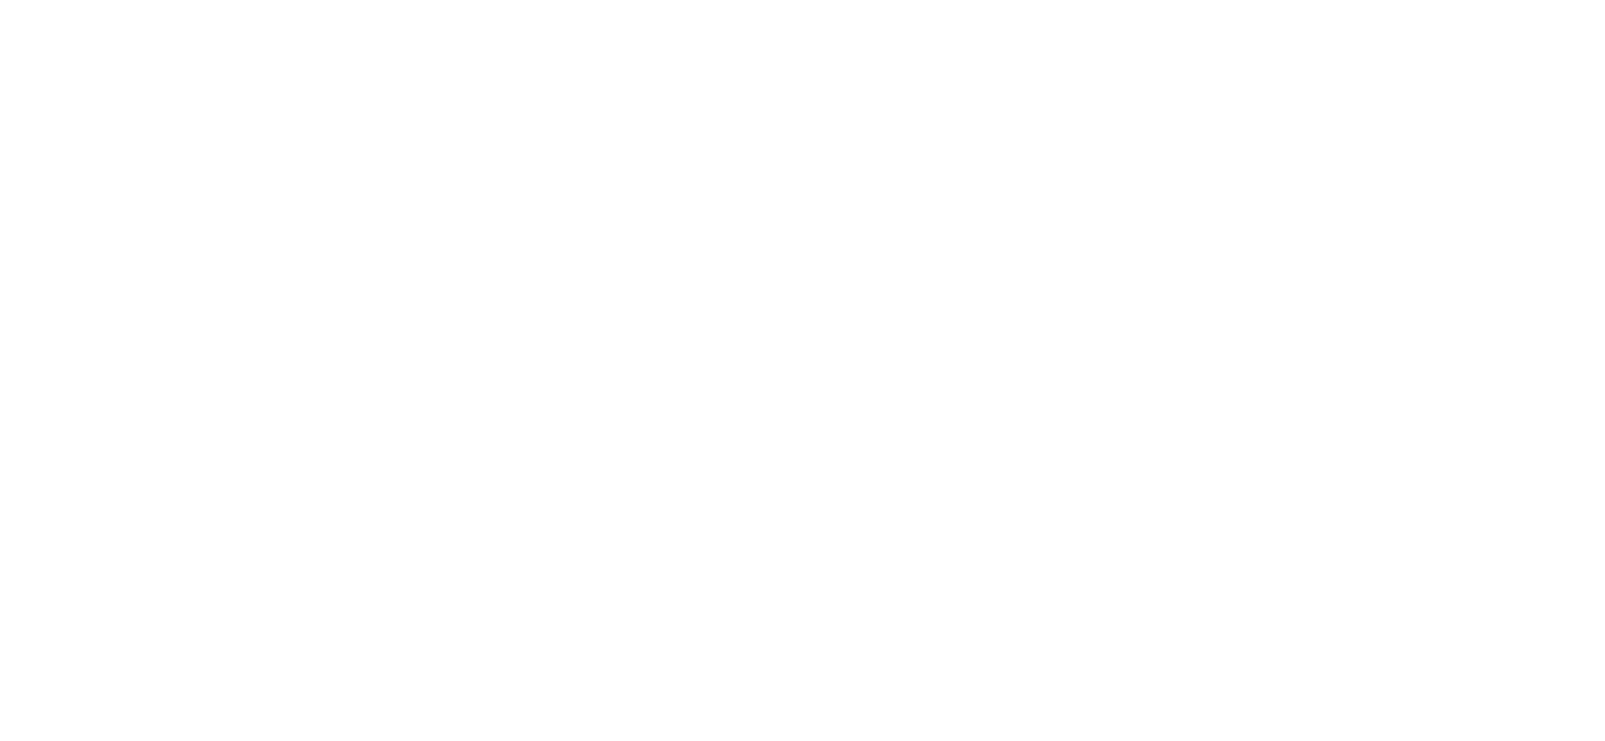 Louisville Tourism/Kentucky International Convention Center logo